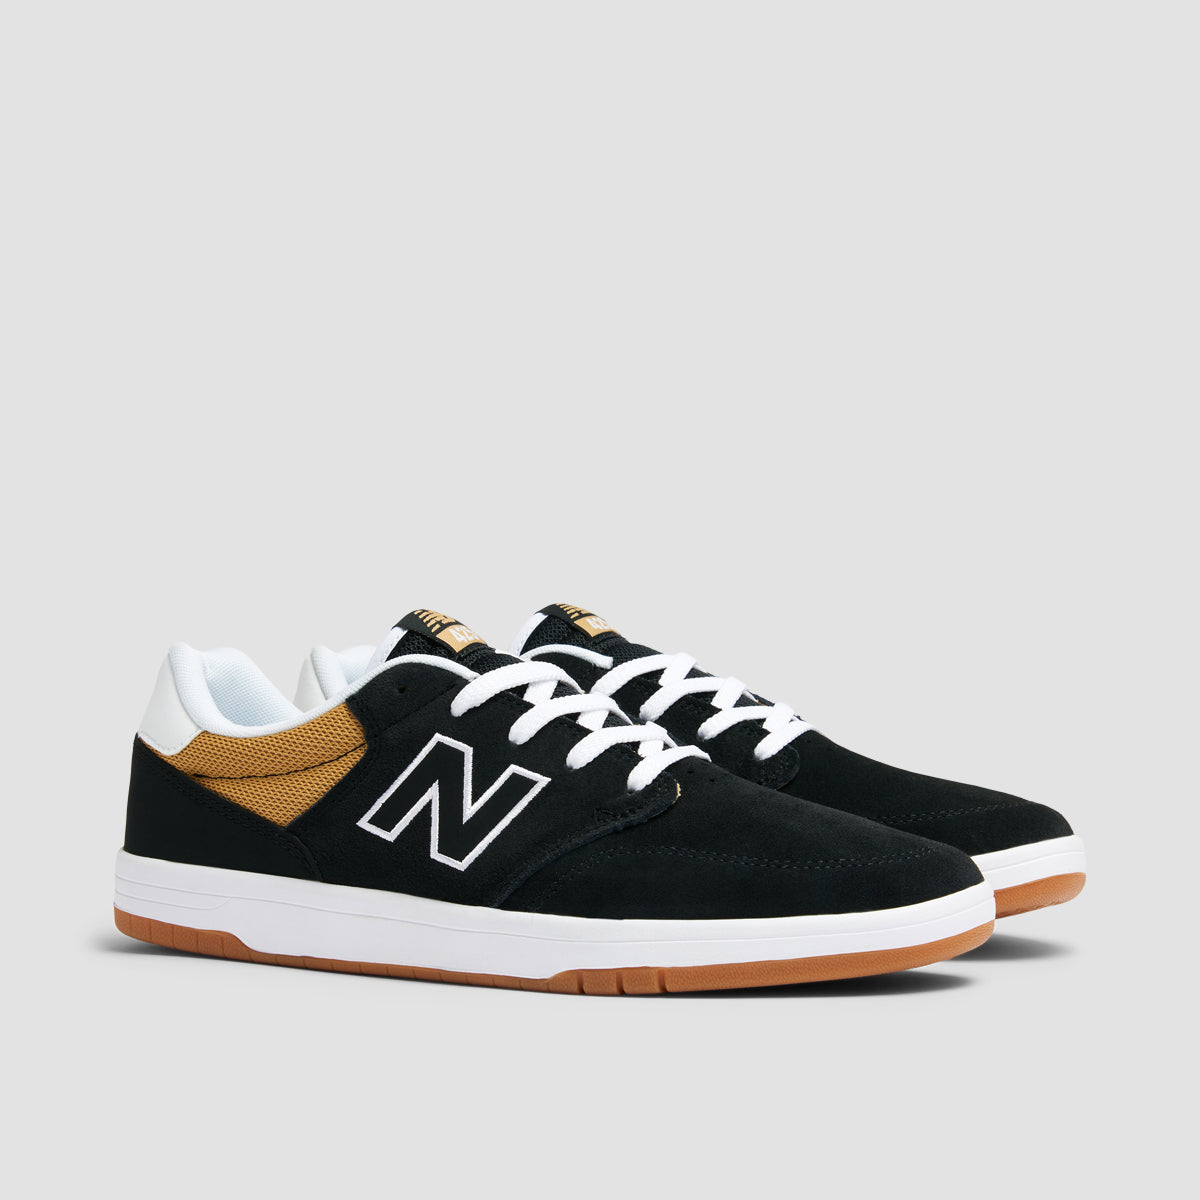 New Balance Numeric 425 Shoes - Black/White